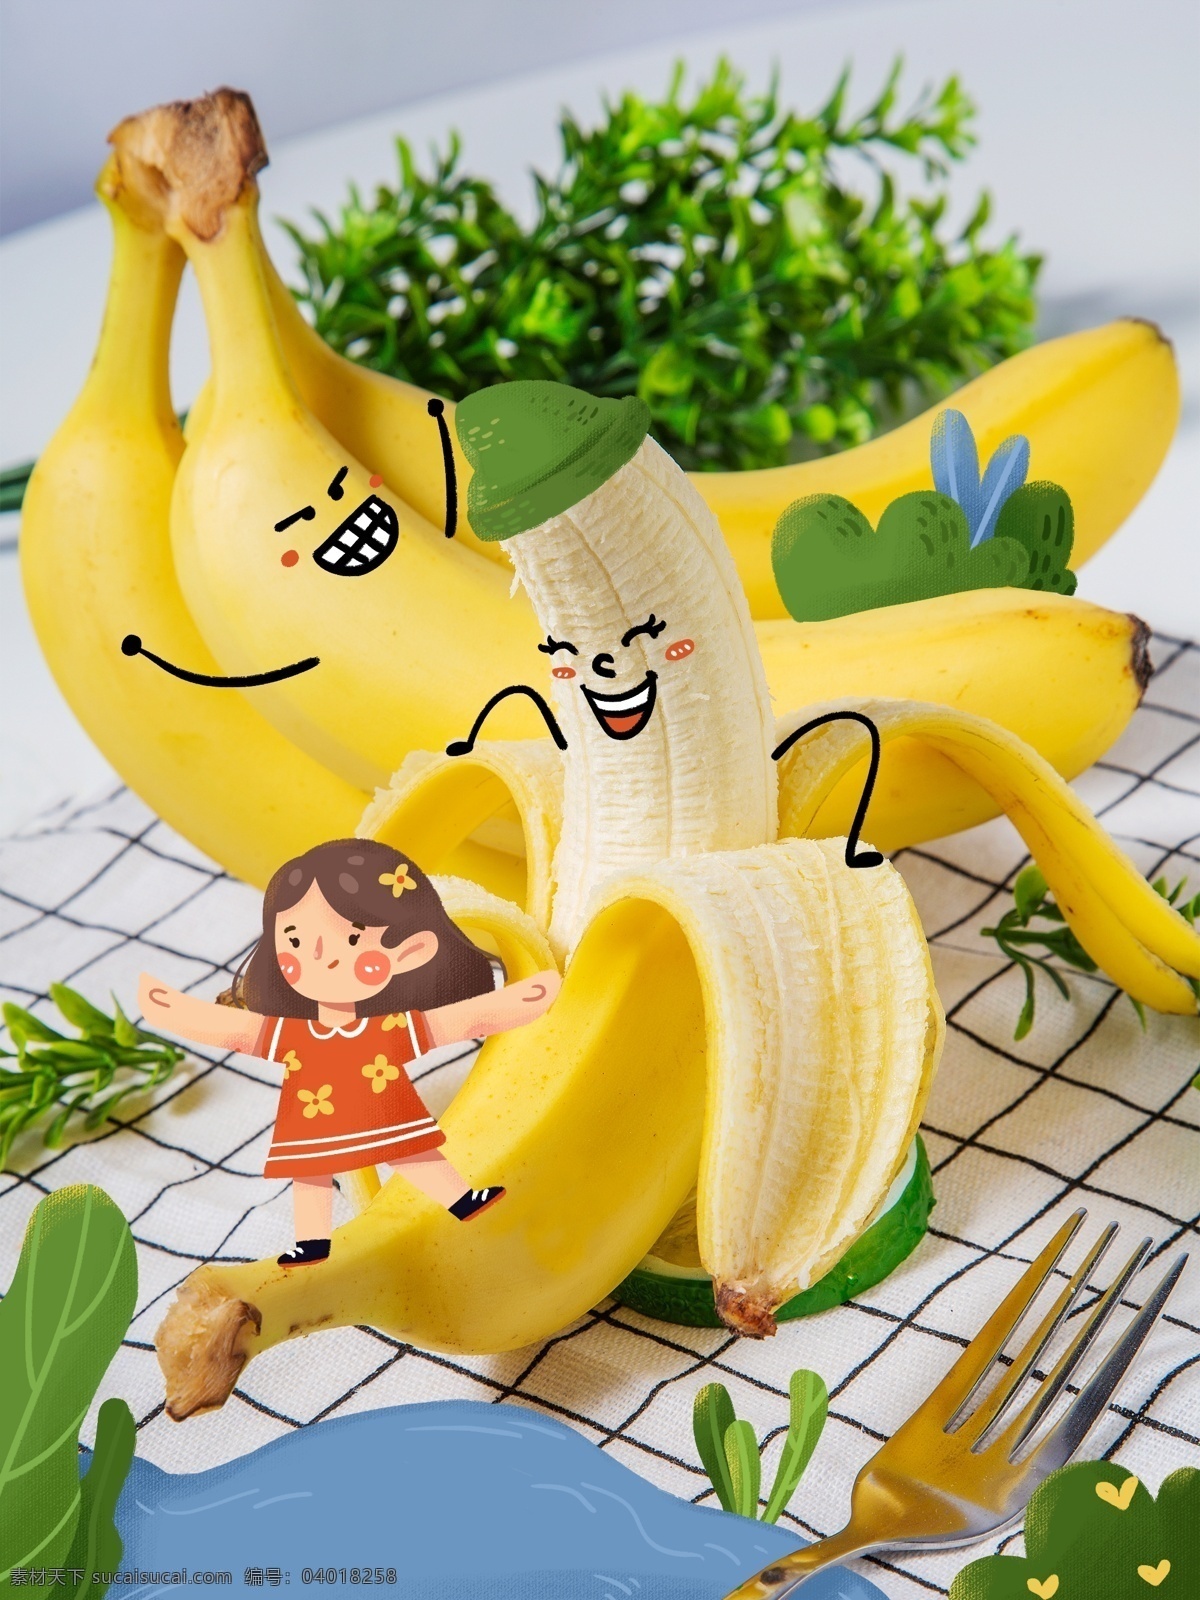 创意 图 插画 美食 类 香蕉 女孩 池塘 食物 情感表达